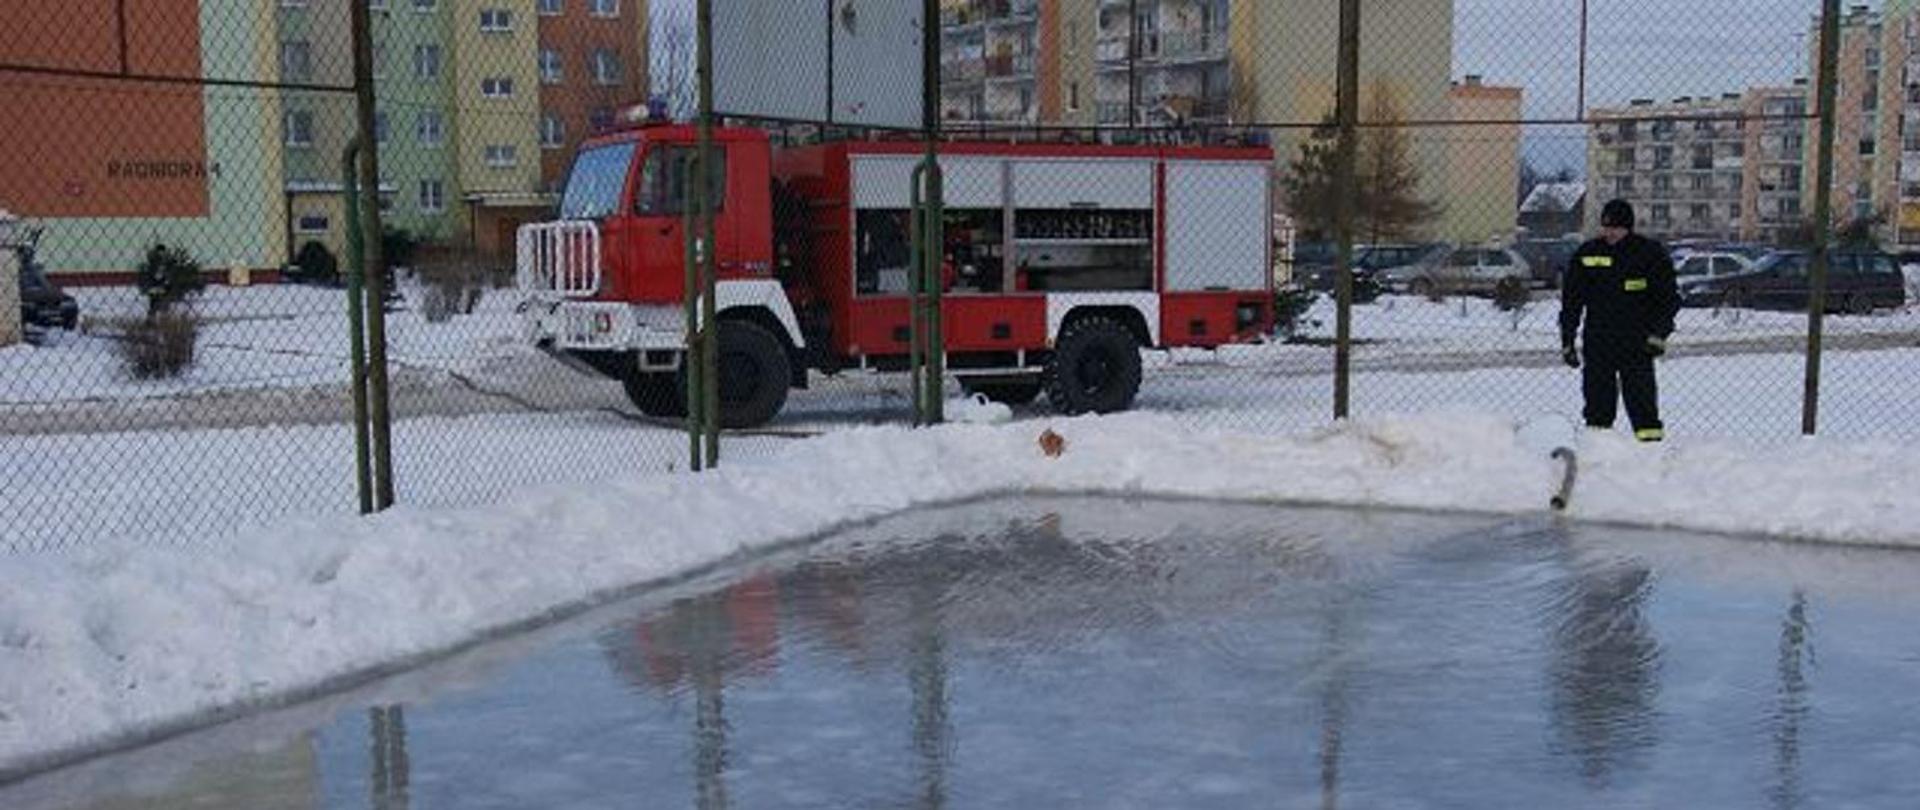 Obraz przedstawia strażaka przy lodowisku, w tle strażacki samochód